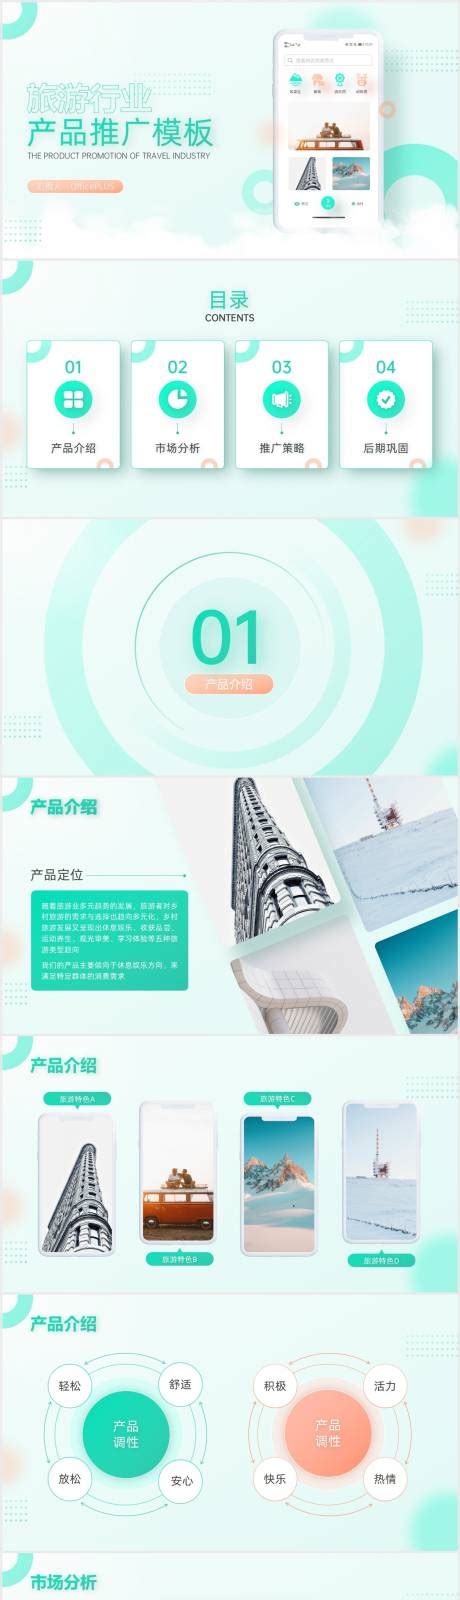 旅游宣传旅游画册旅行社公司画册PPT模板 - 彩虹办公